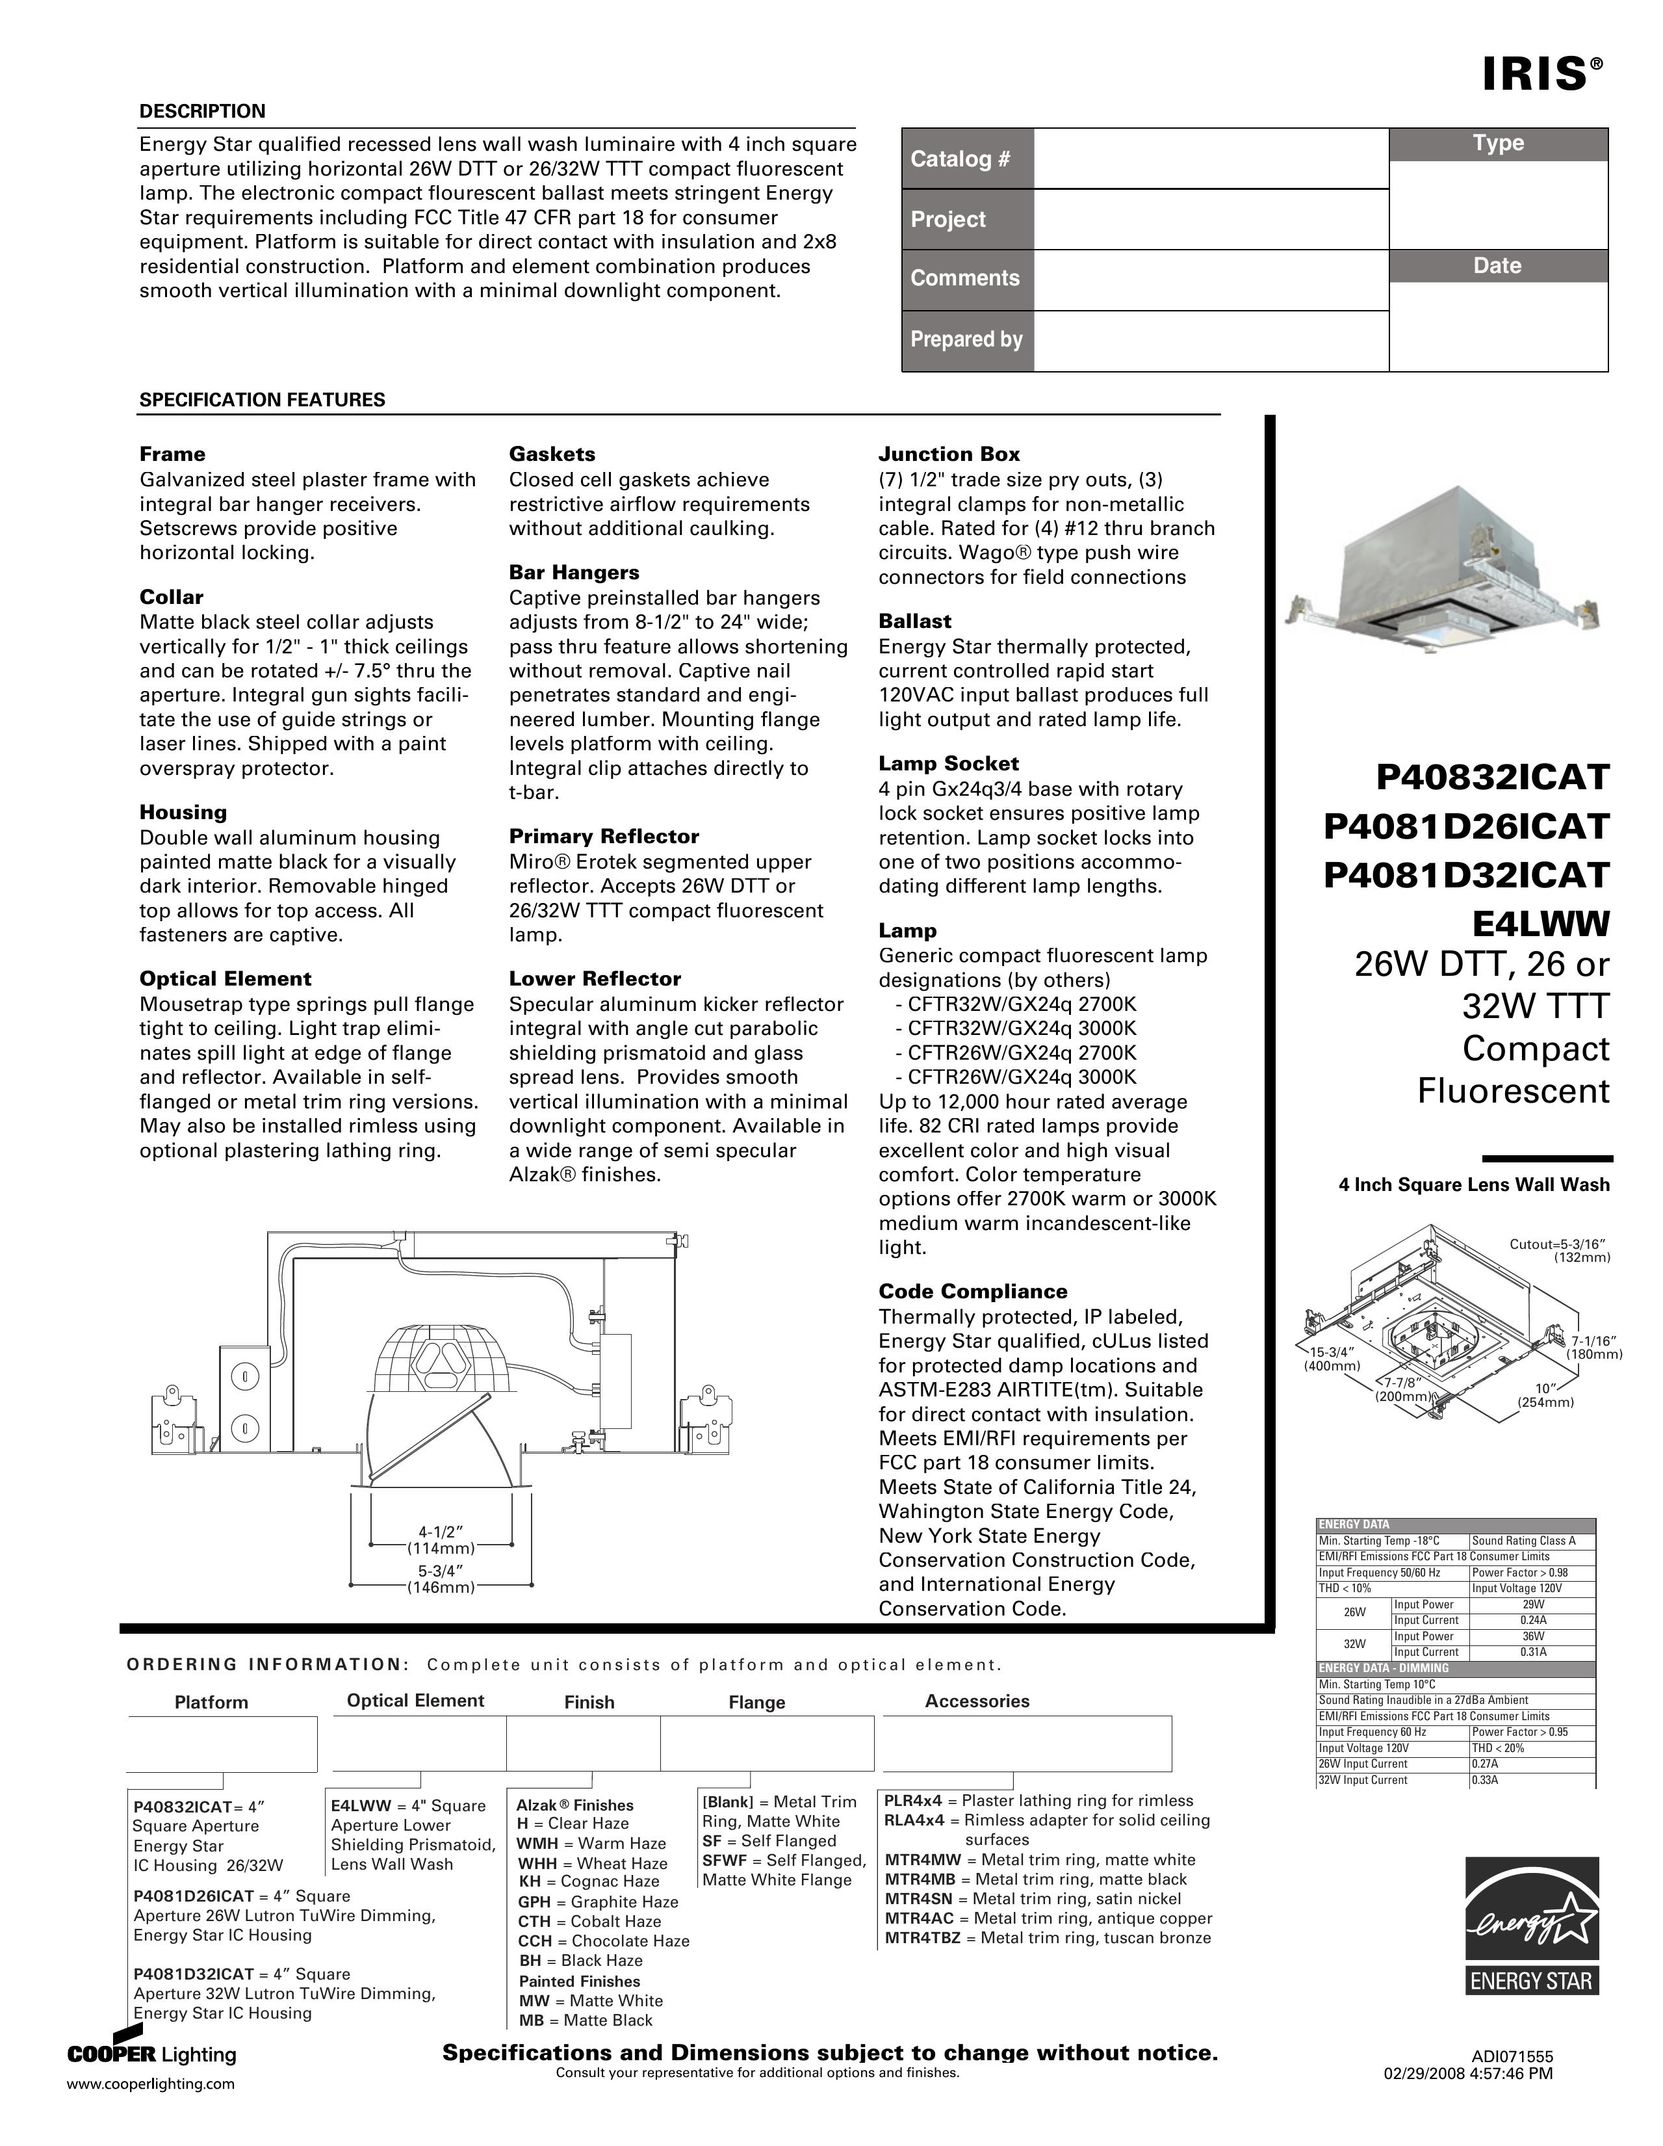 IRIS P4081D32ICAT Indoor Furnishings User Manual